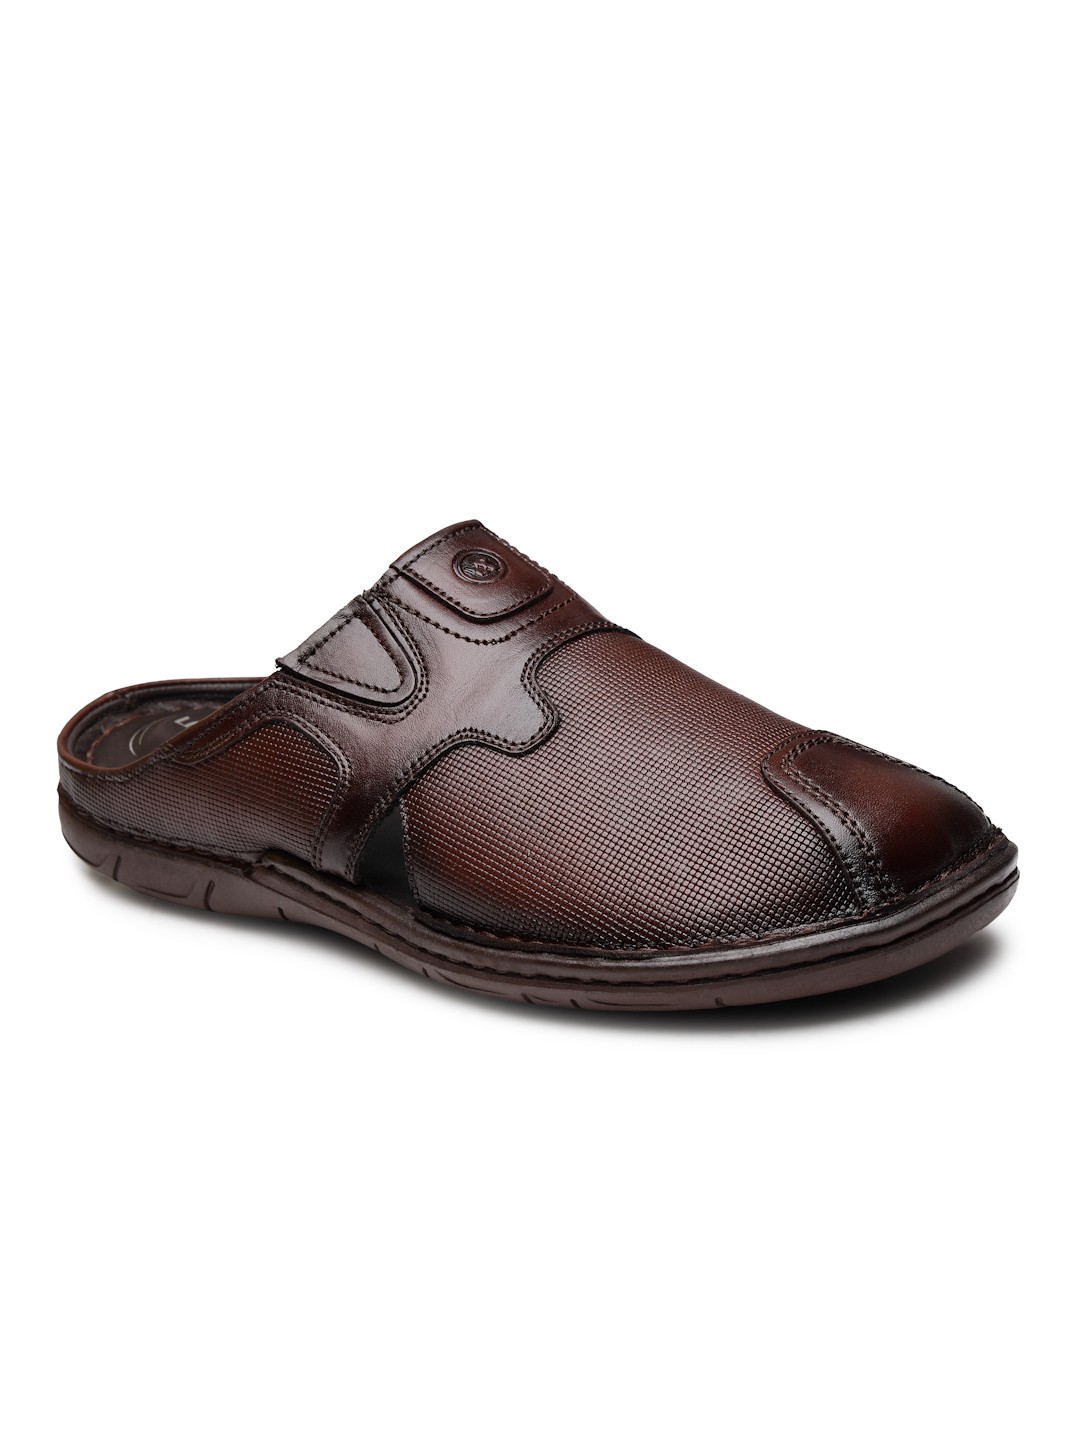 Buy Von Wellx Germany Comfort Men's Brown Slippers Arlo Online in Ghaziabad